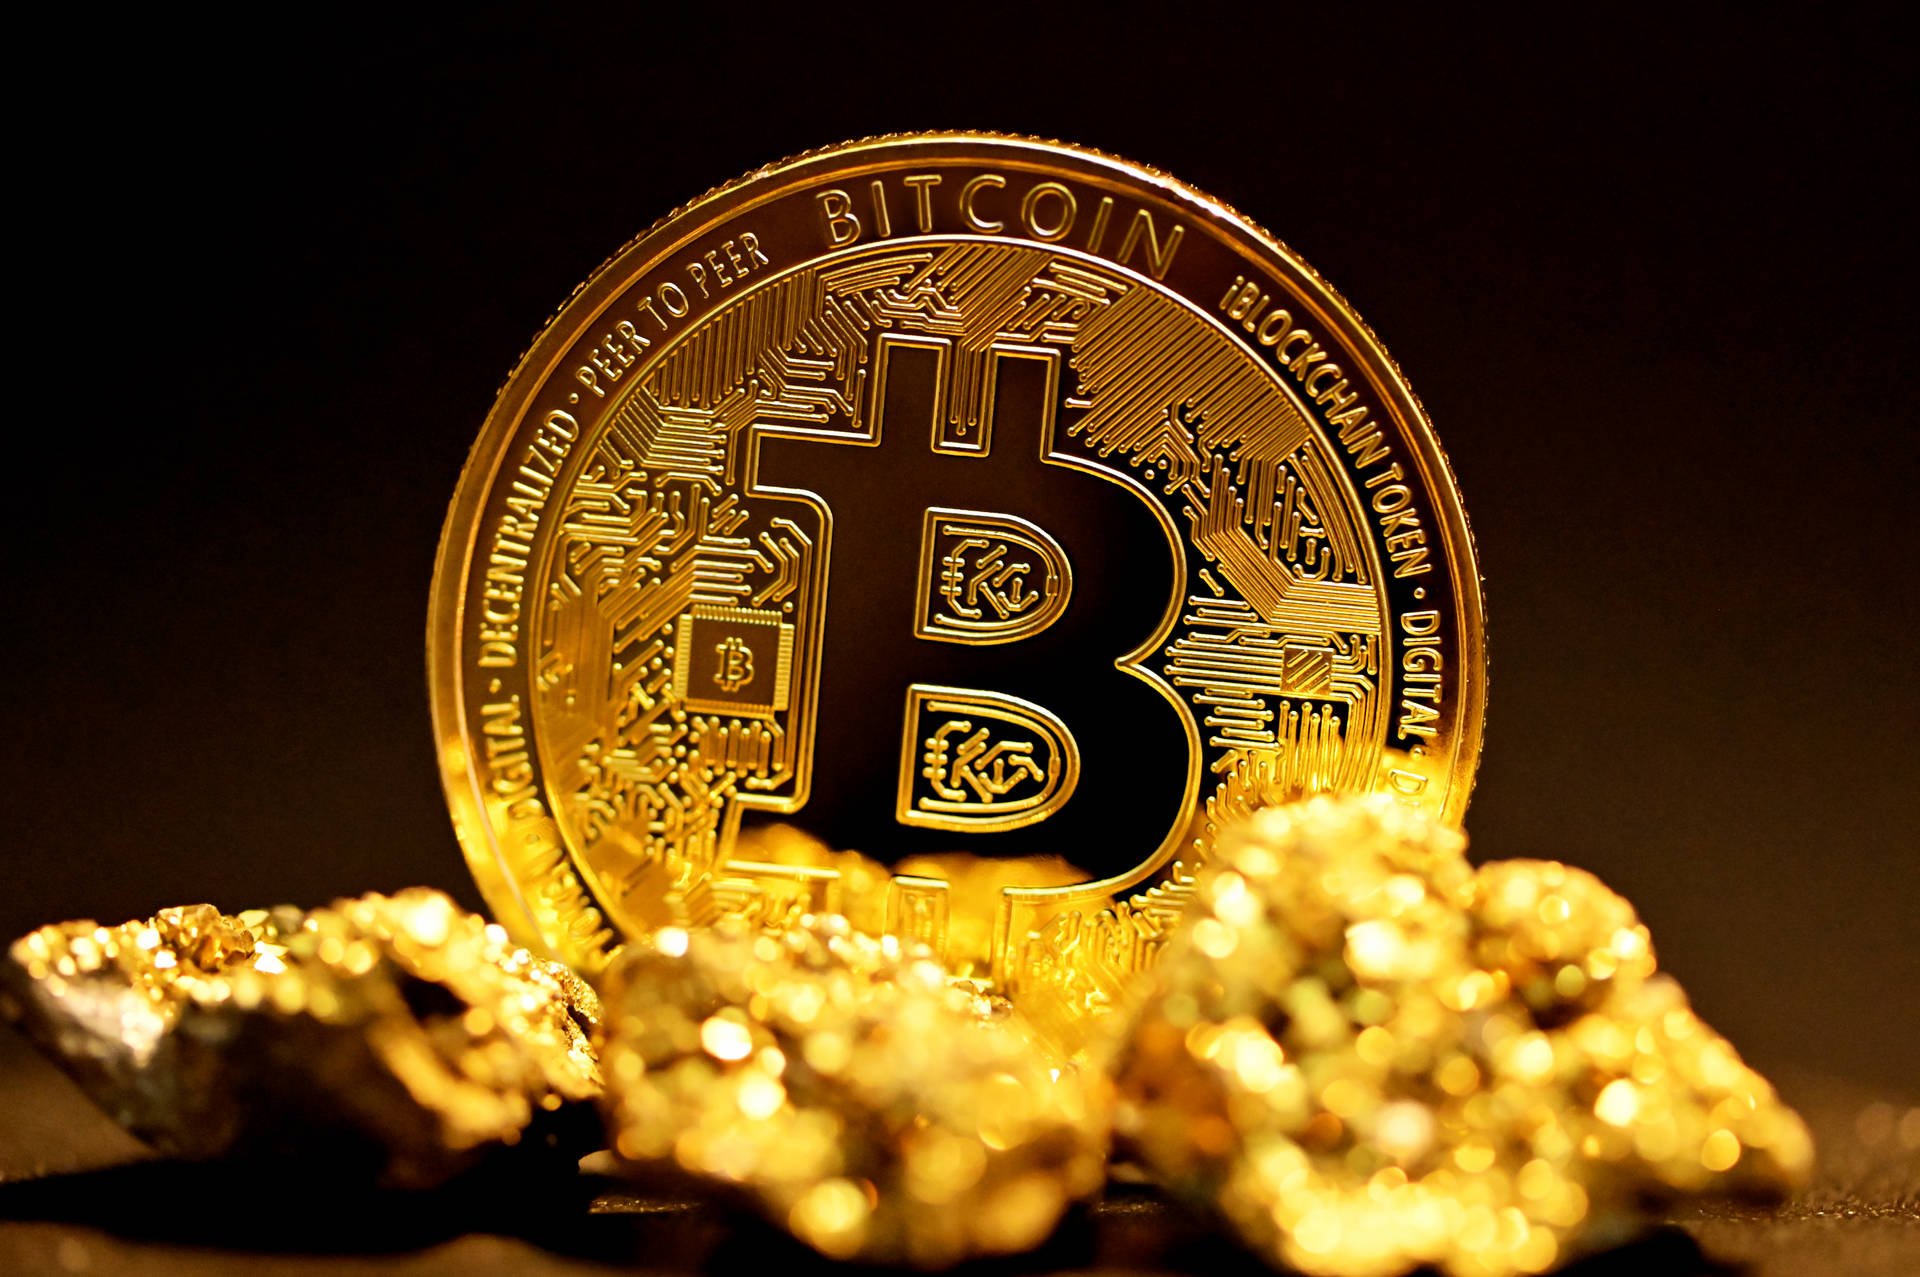 Brilliant Gold Bitcoin